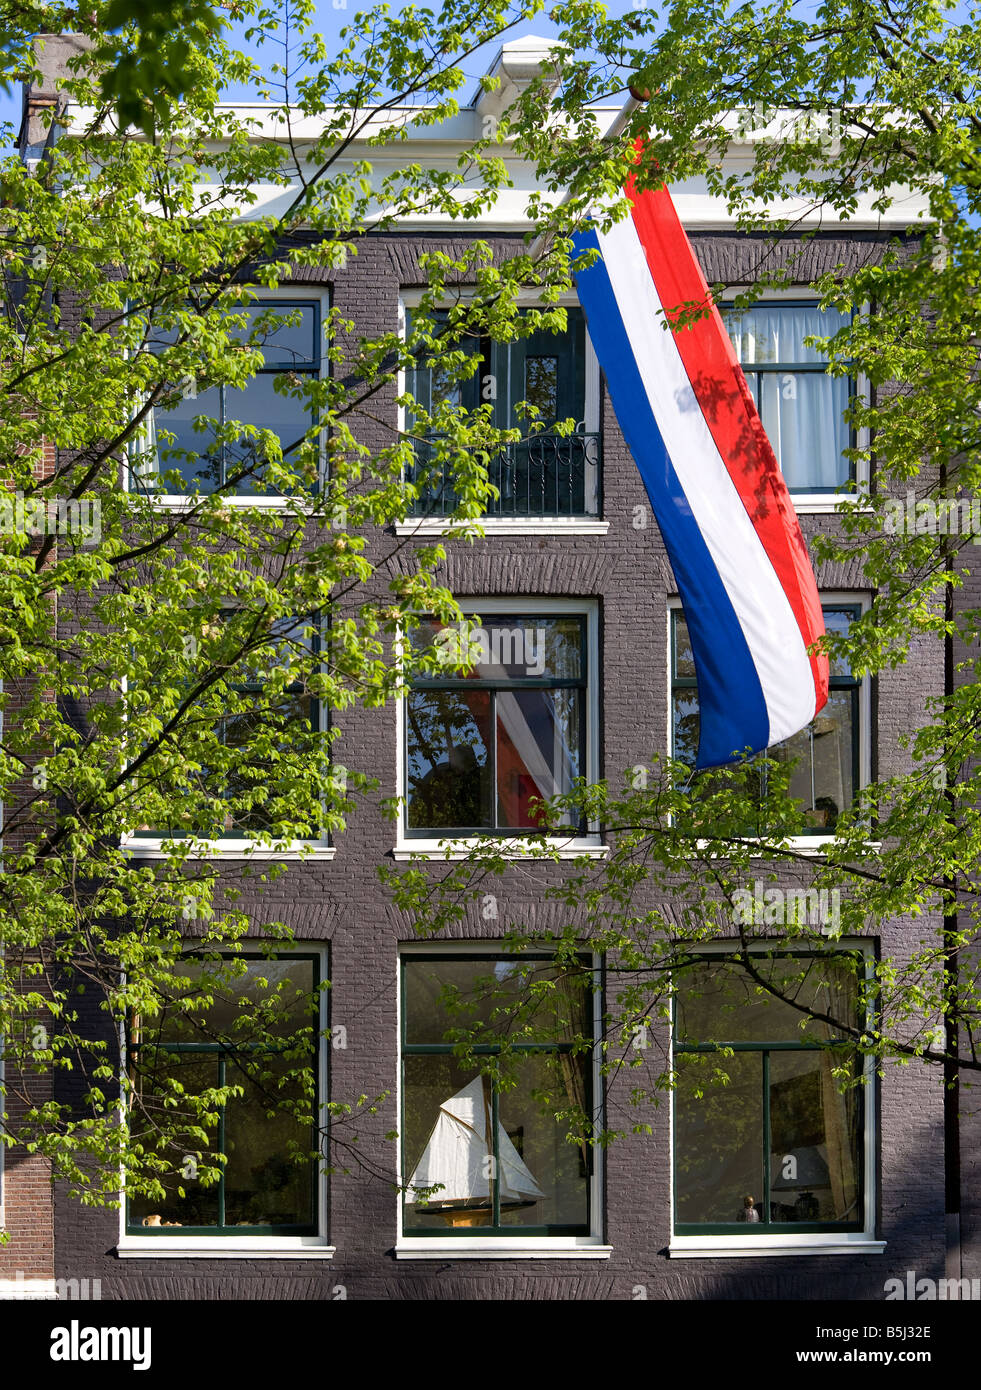 Amsterdam. Haus am Kanal im Jordaan mit niederländischen Nationalflagge und eine Modell-Segelboot auf der Fensterbank. Frühling. Stockfoto